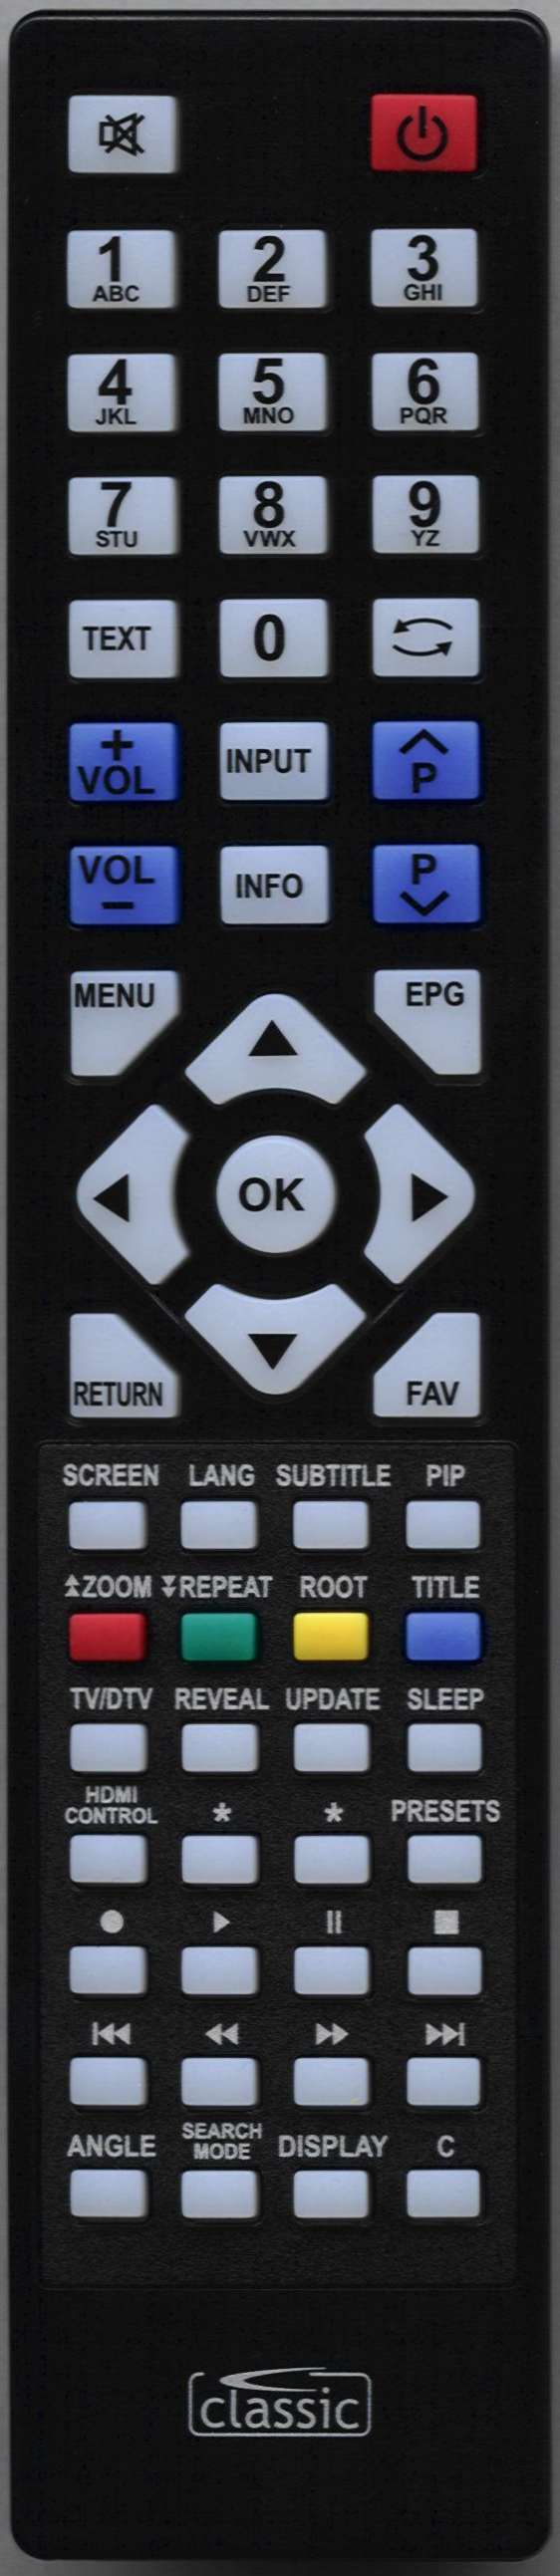 Polaroid P40LCD12 Remote Control Alternative